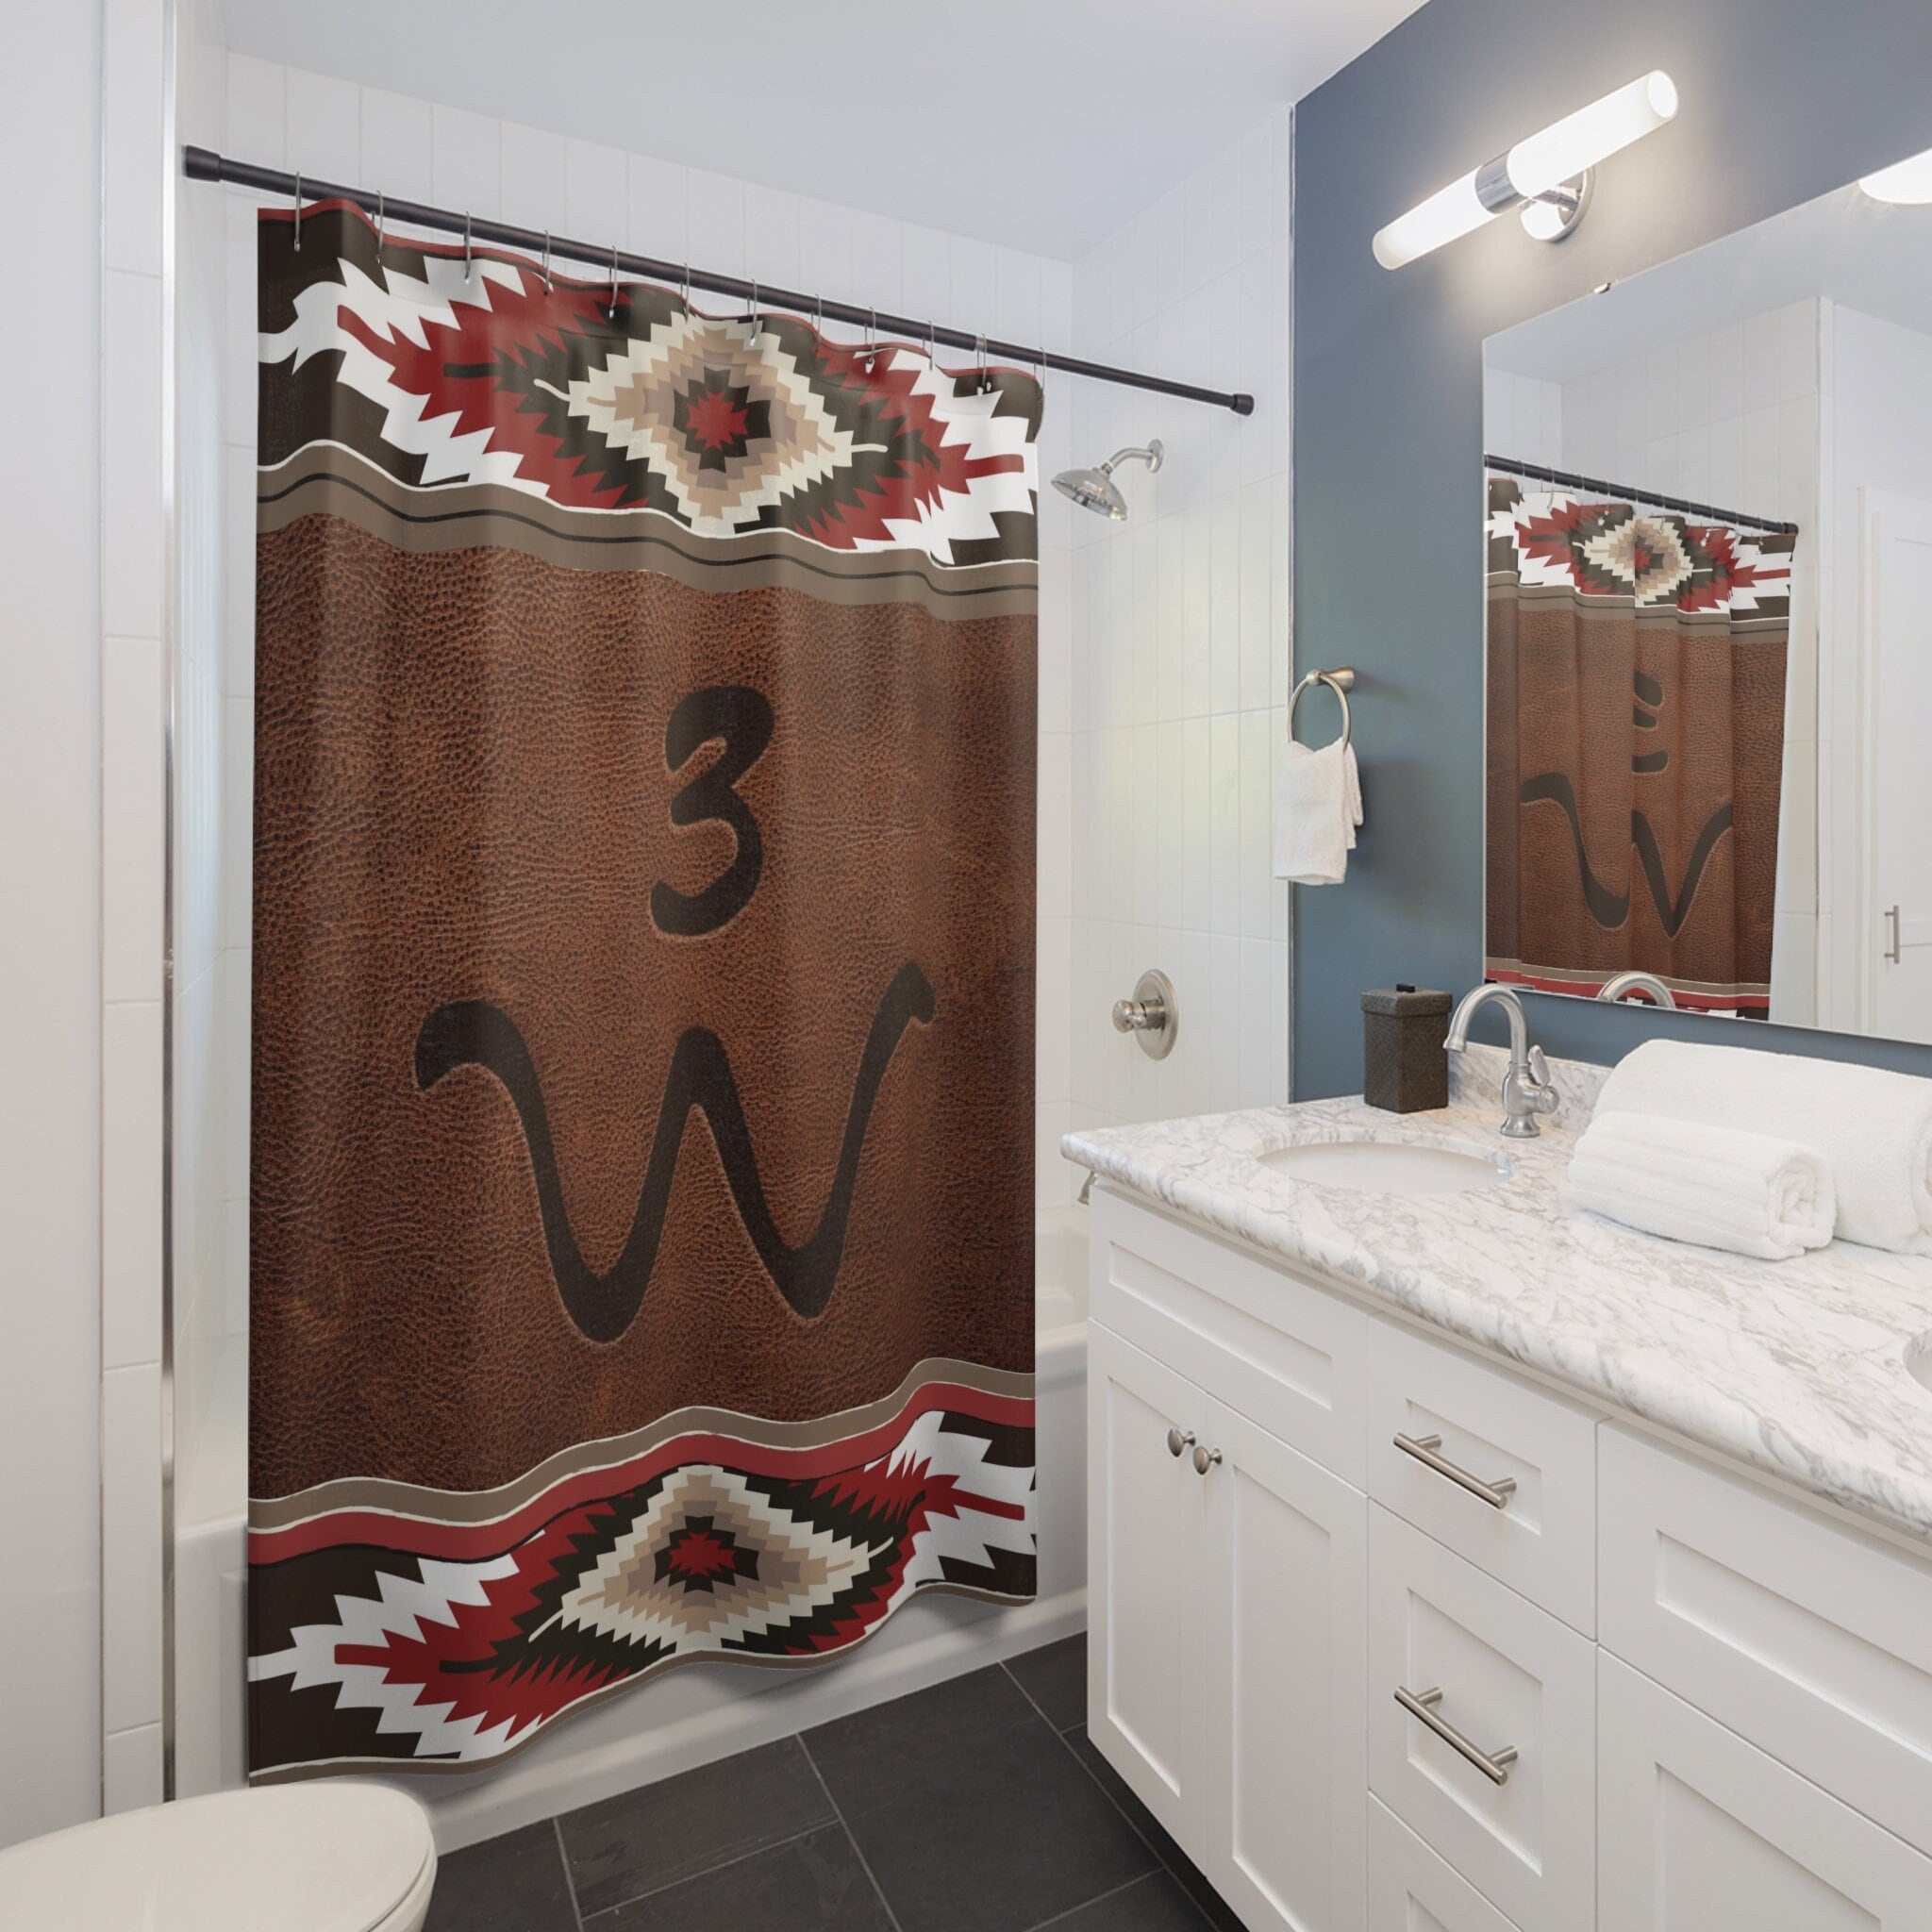 Hidden Valley® Ranch Shower Curtain and Bath Mat Set